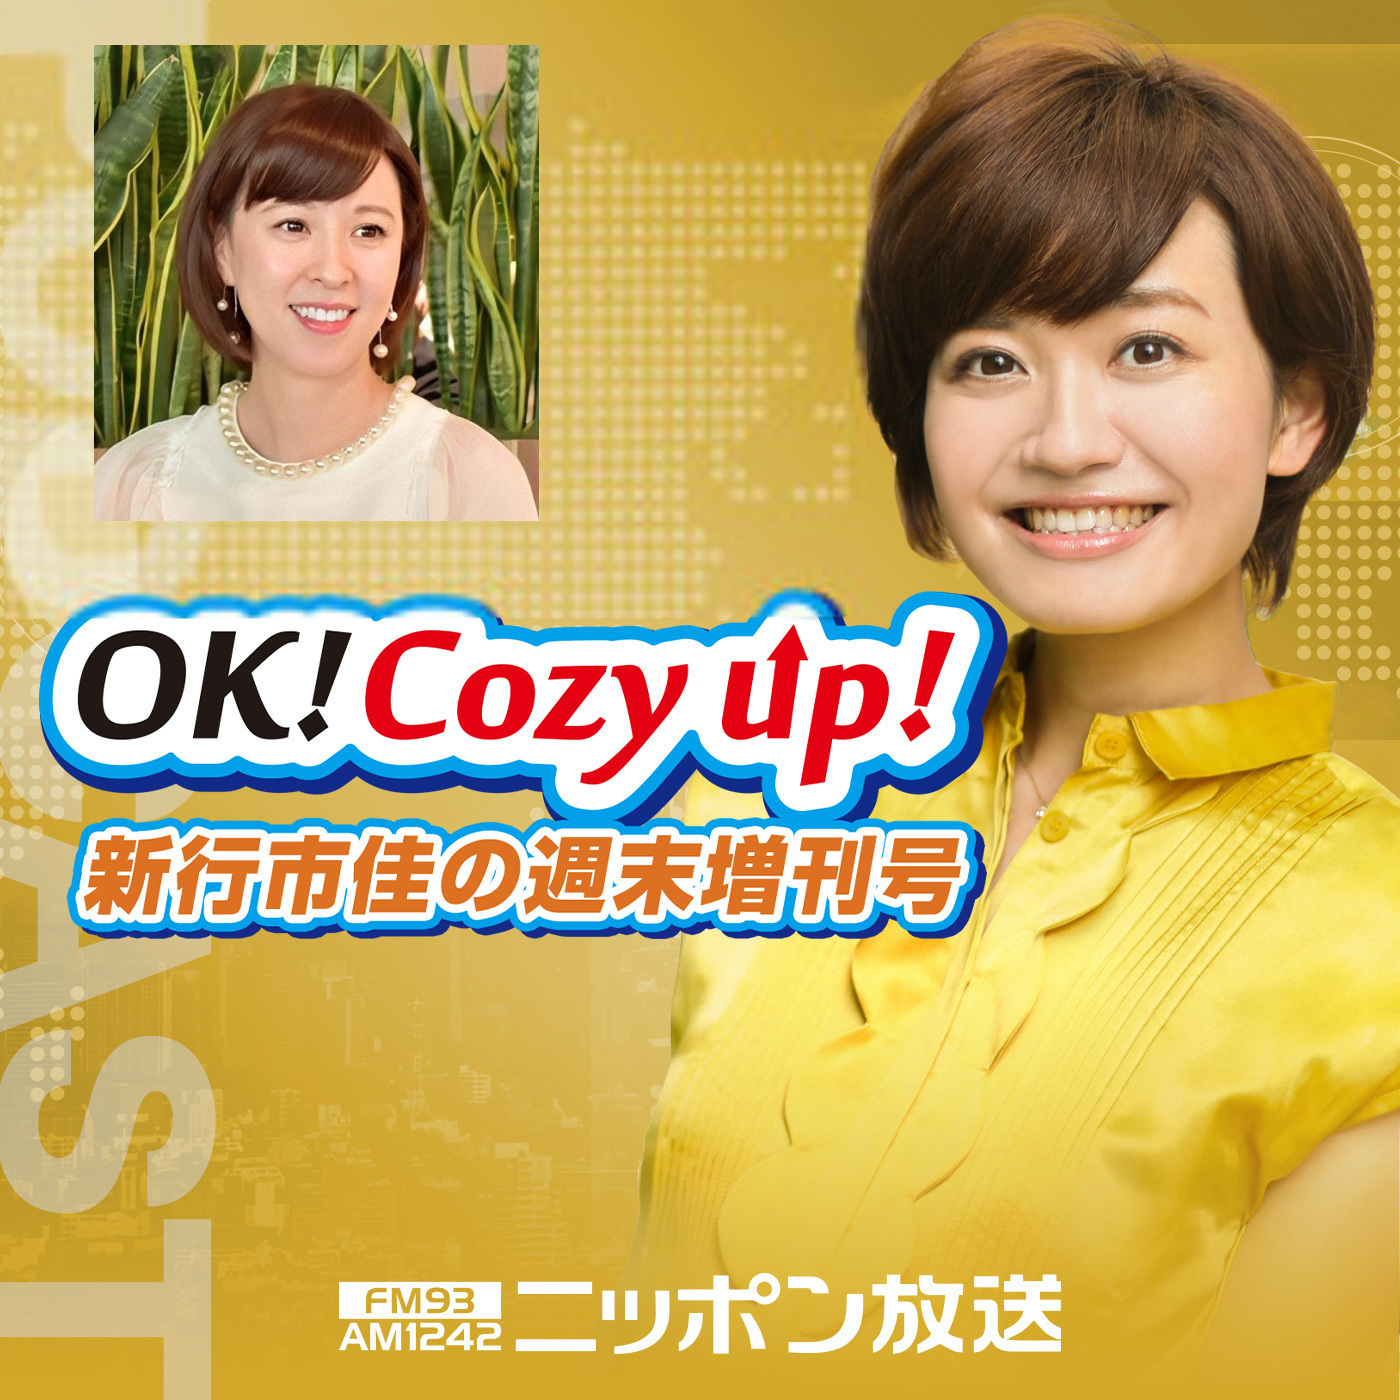 2021年10月30日（土）「OK! Cozy up!週末増刊号」